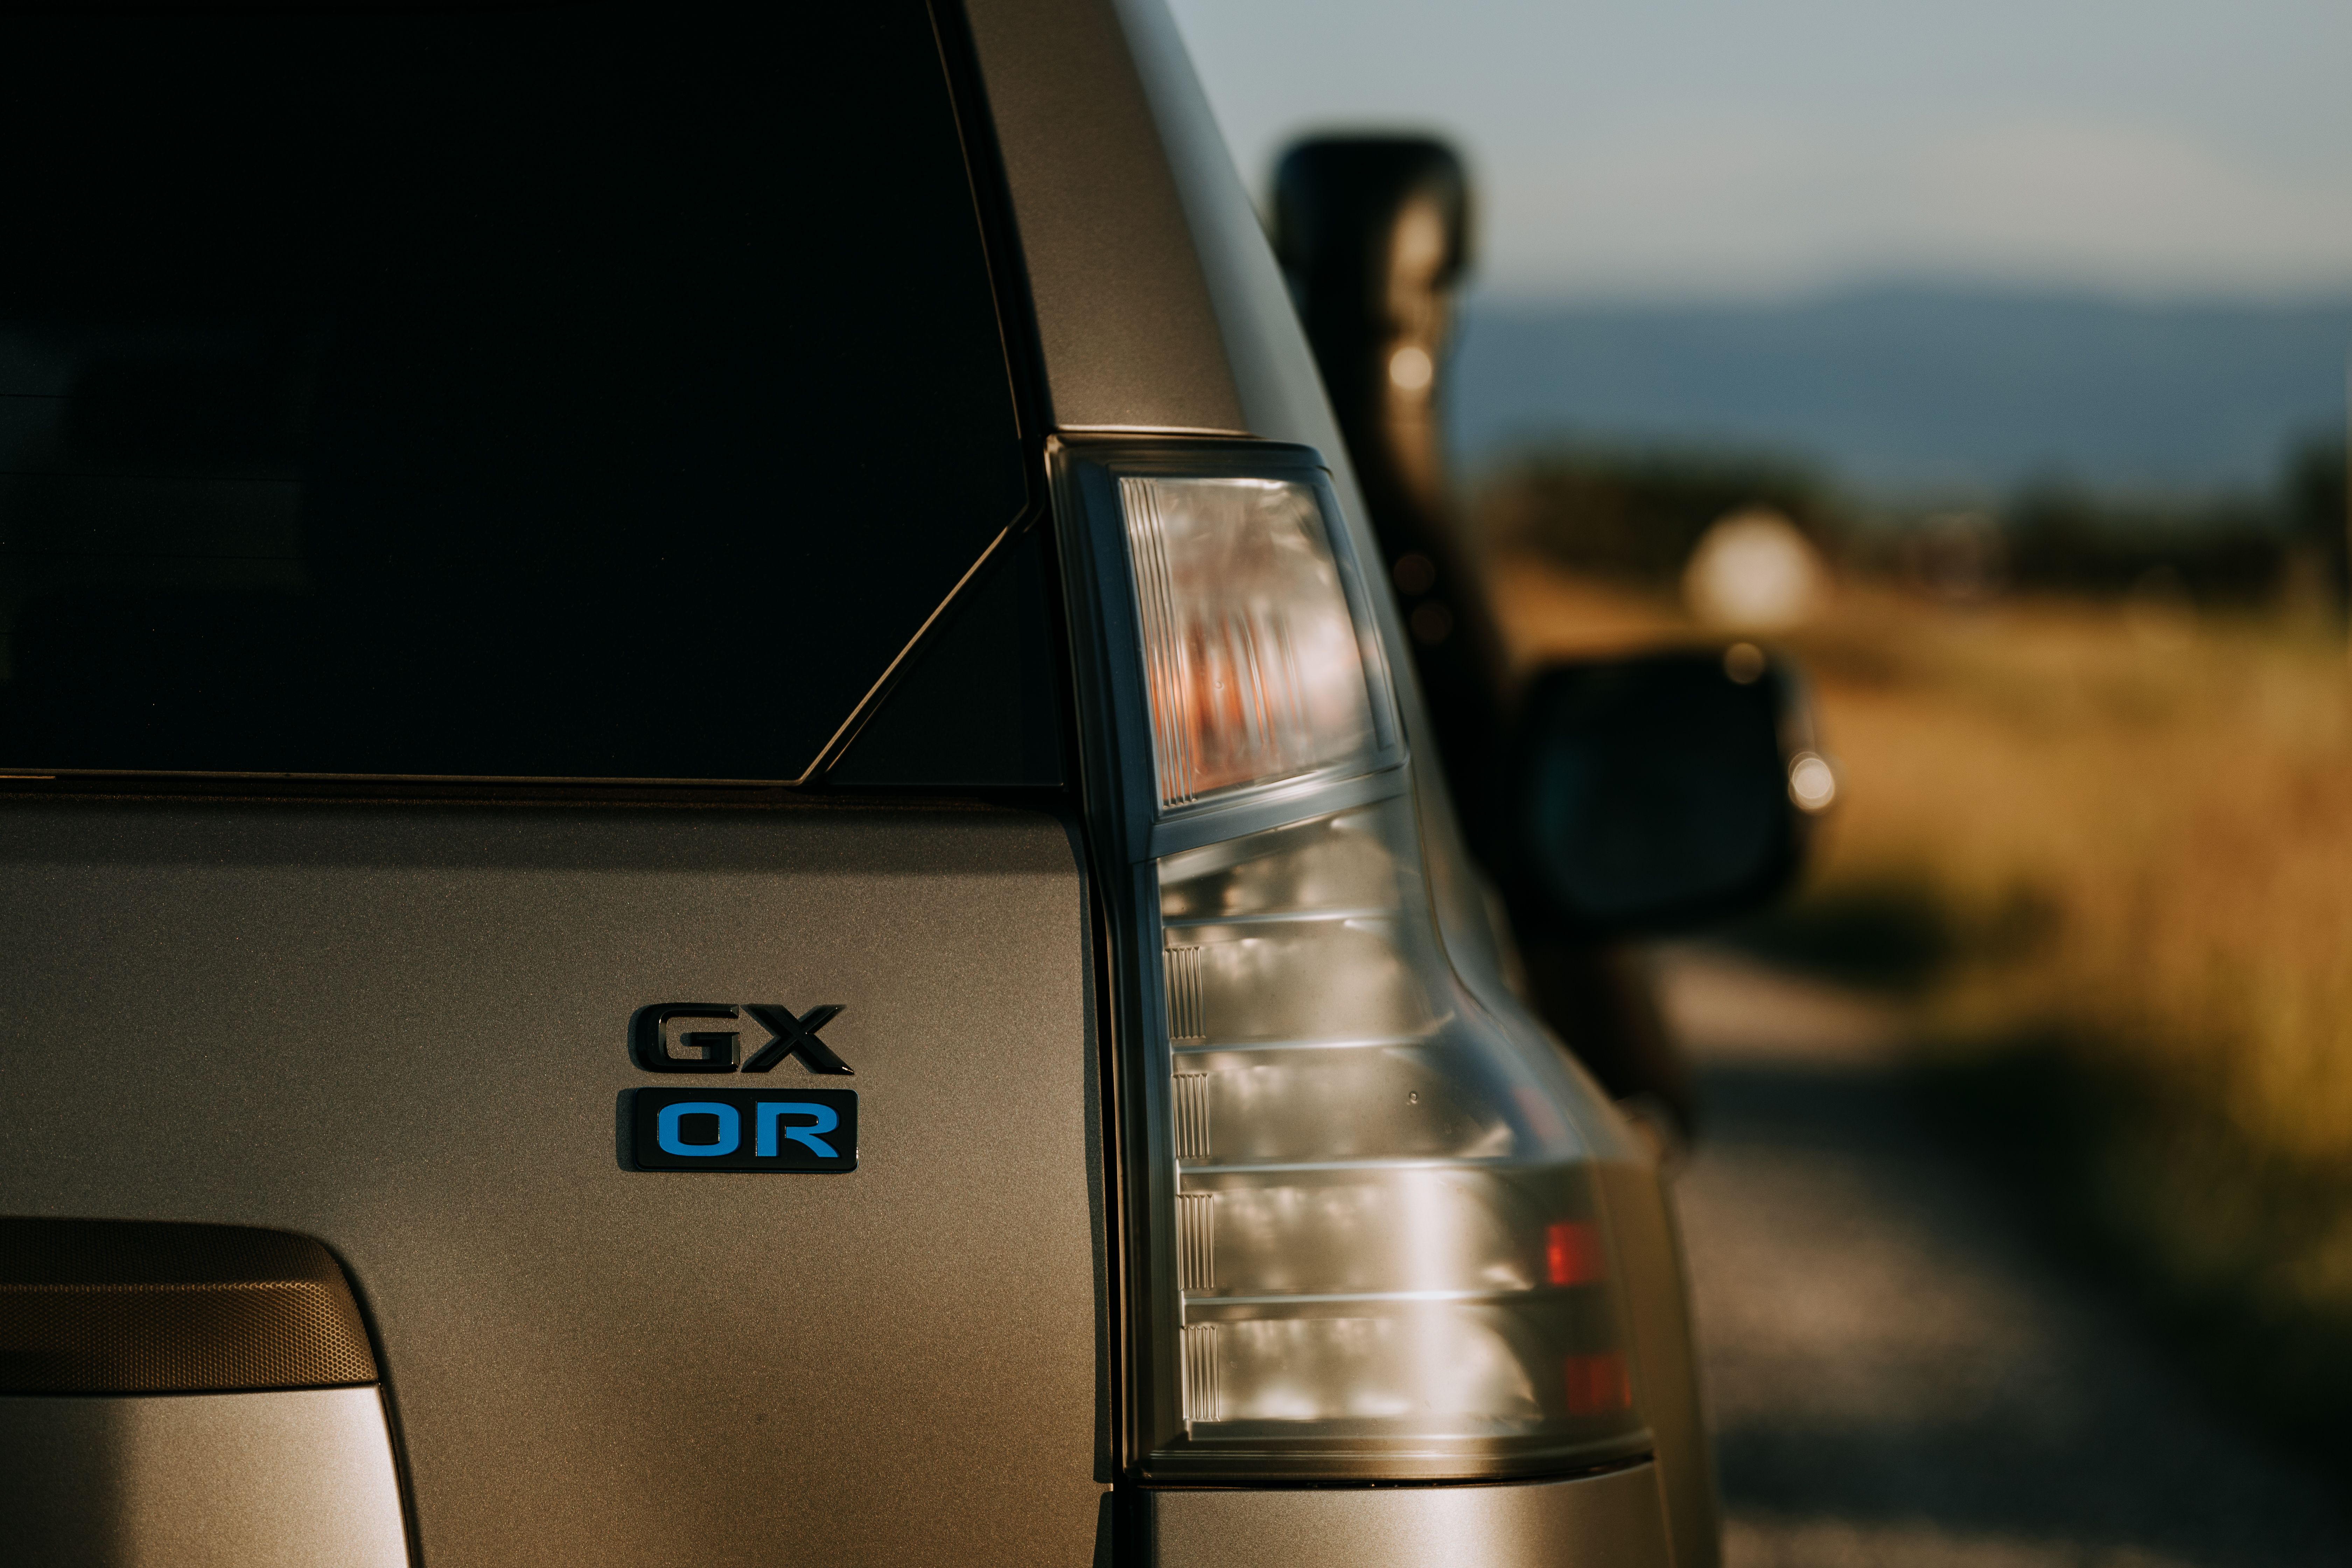 2019 Lexus GXOR Concept